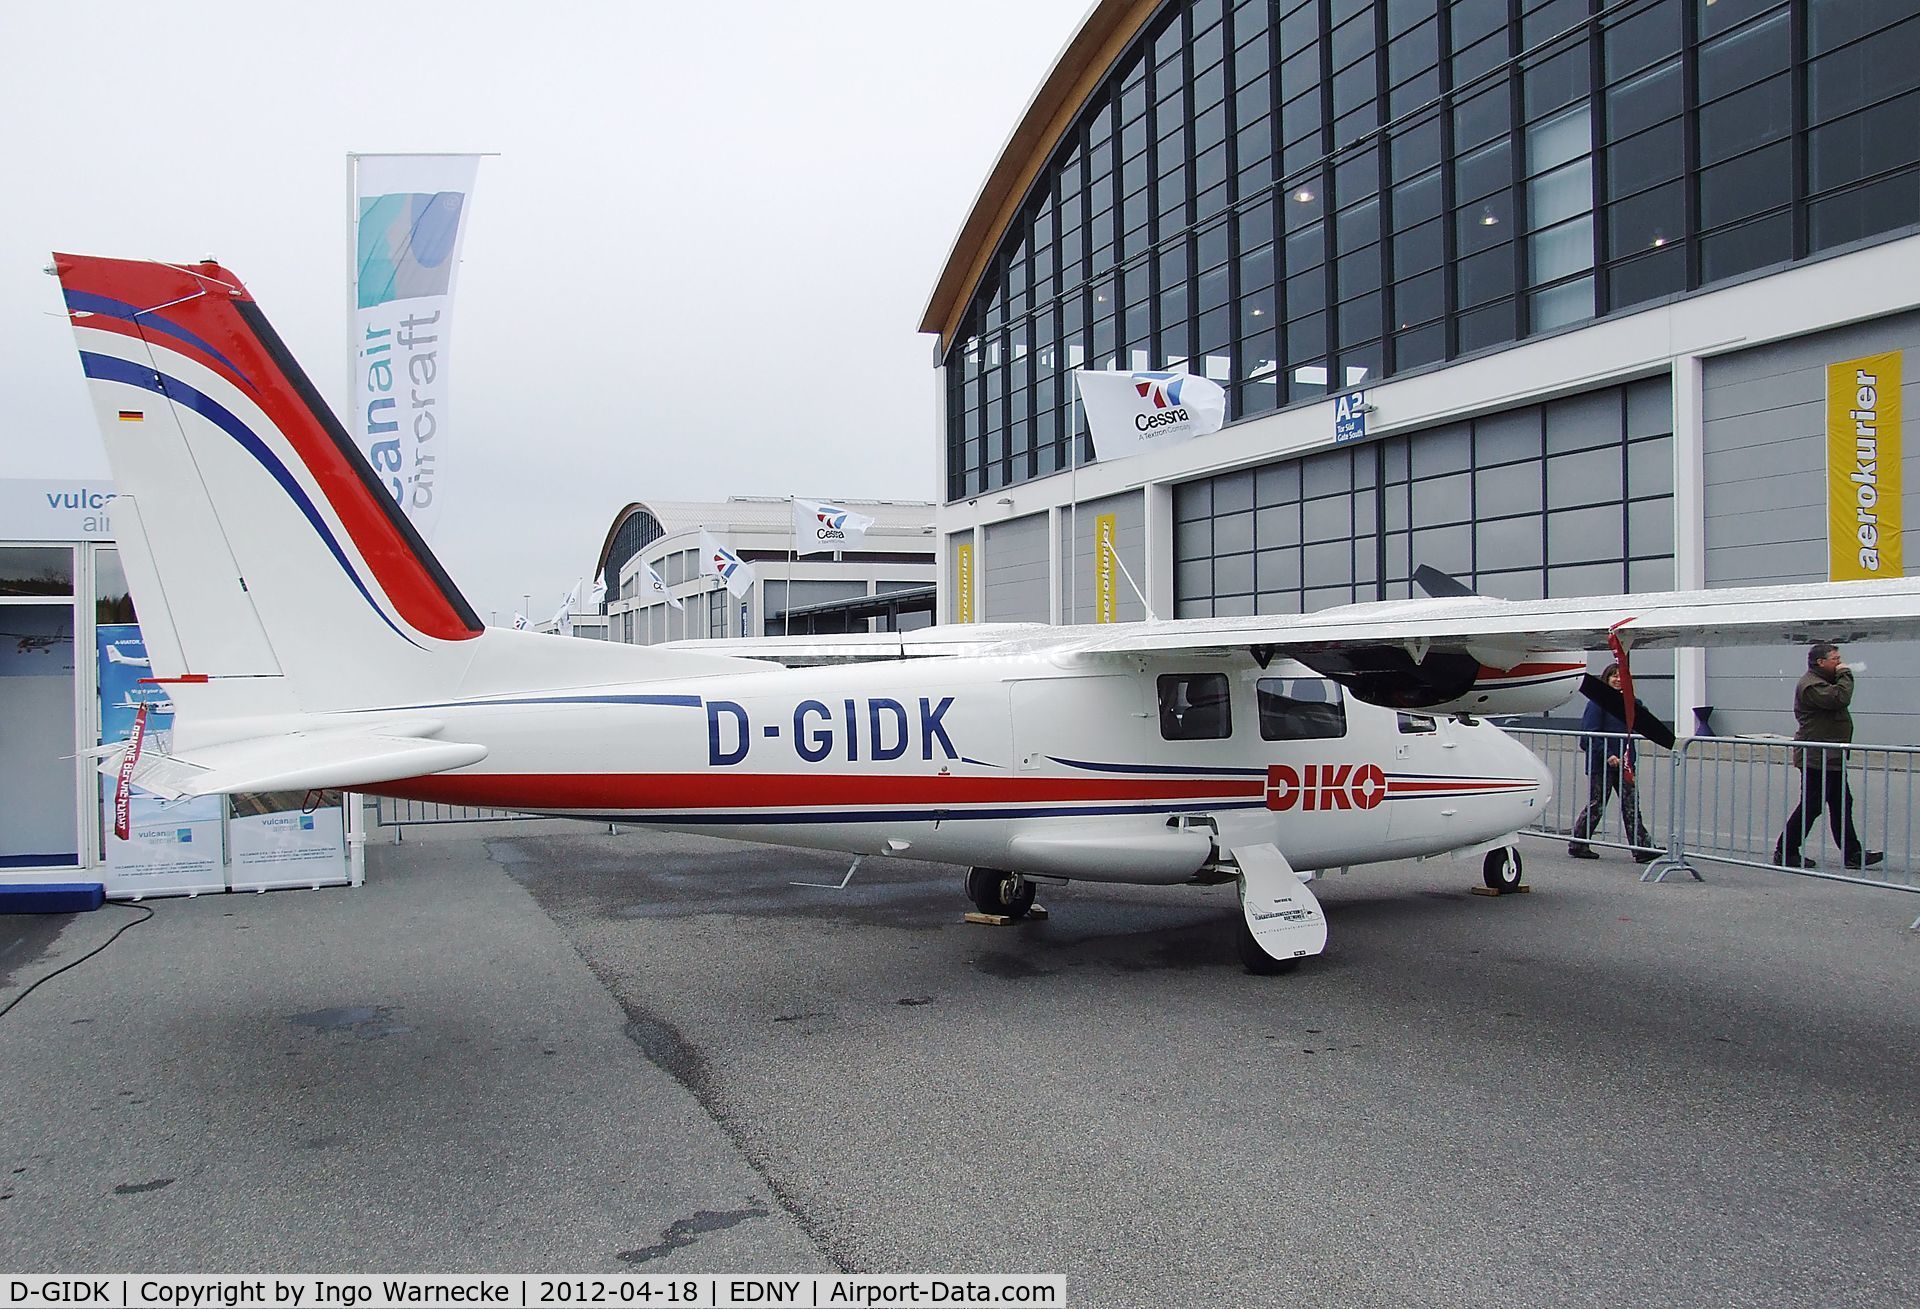 D-GIDK, Vulcanair P-68C C/N 458, Vulcanair P.68C Victor at the AERO 2012, Friedrichshafen